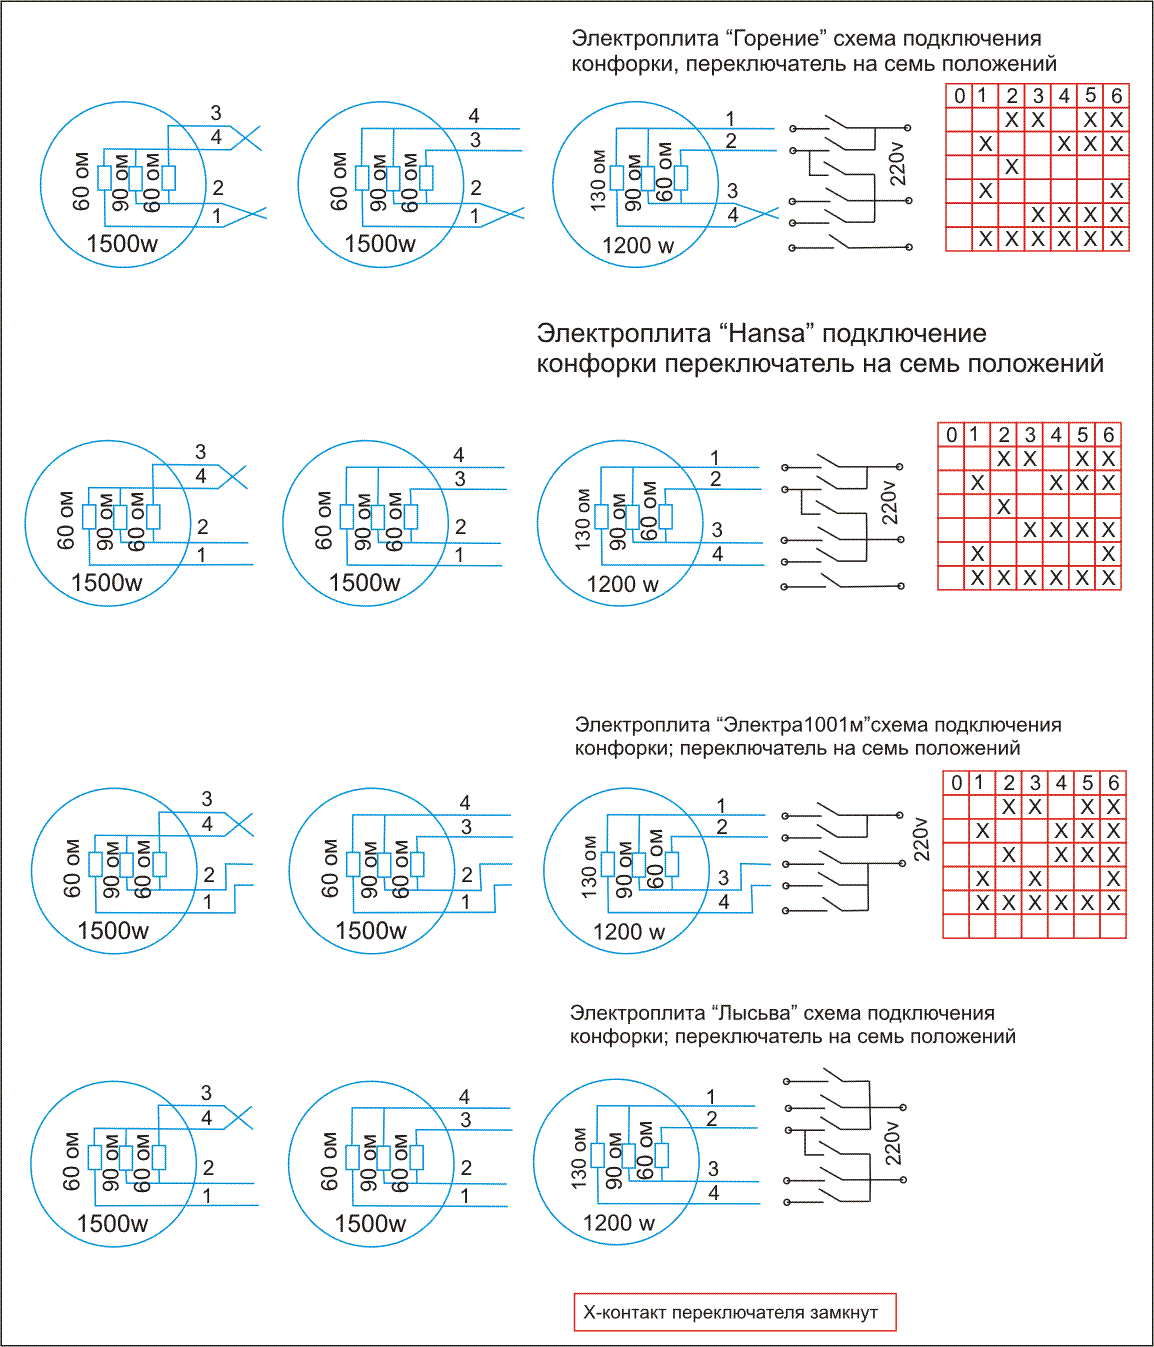 Схема переключателей конфорки на семь положений